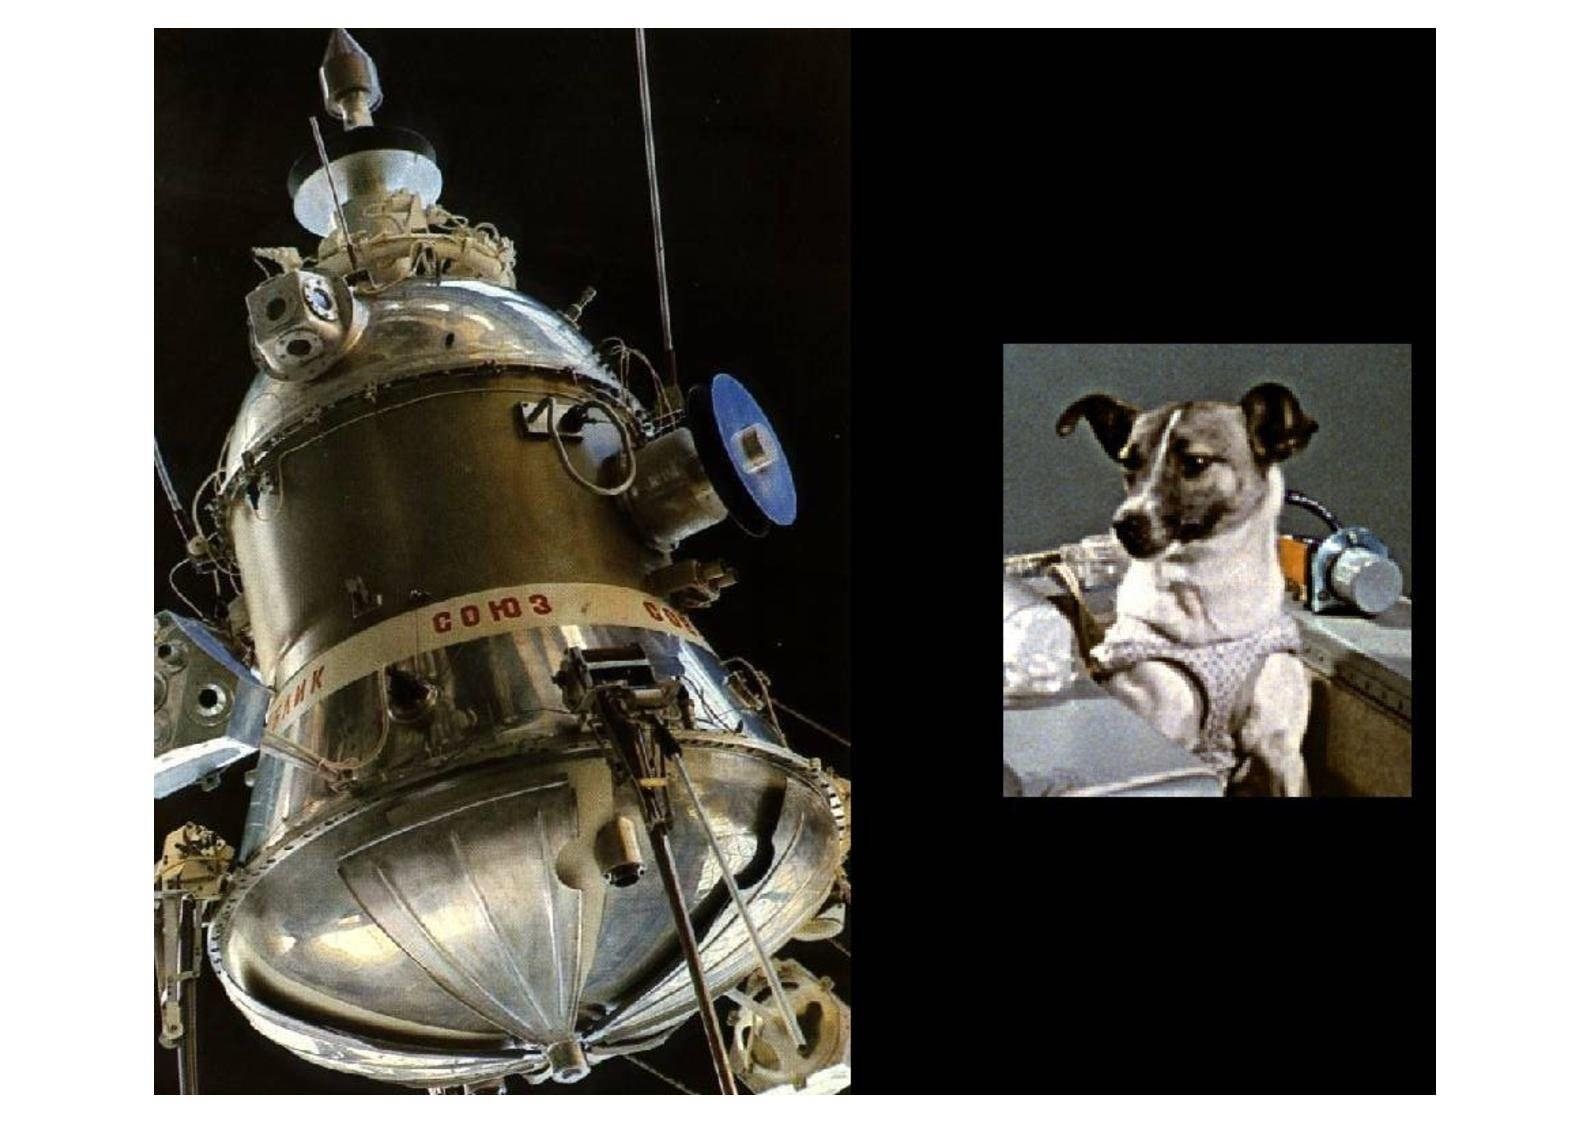 Спутник 5 собаки. Спутник-5 космический аппарат белка и стрелка. Спутник 2 лайка. Второй Спутник земли СССР лайка. Космический корабль белки и стрелки.